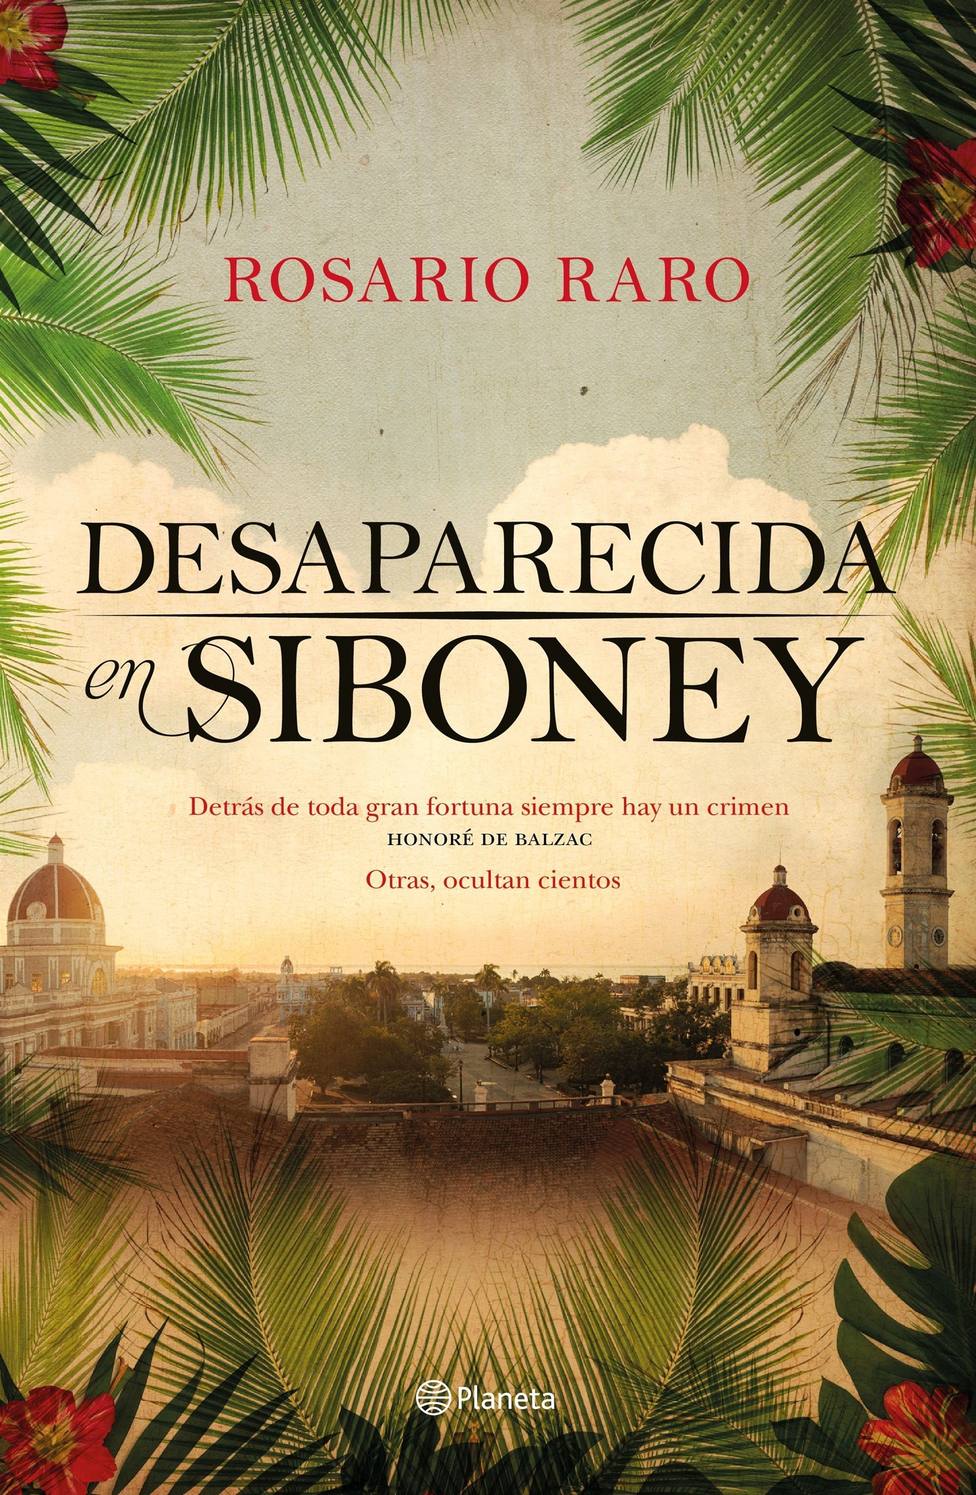 Rosario Raro: La novela consiste en tomar datos de otros géneros y llevarlos al paroxismo de la emoción